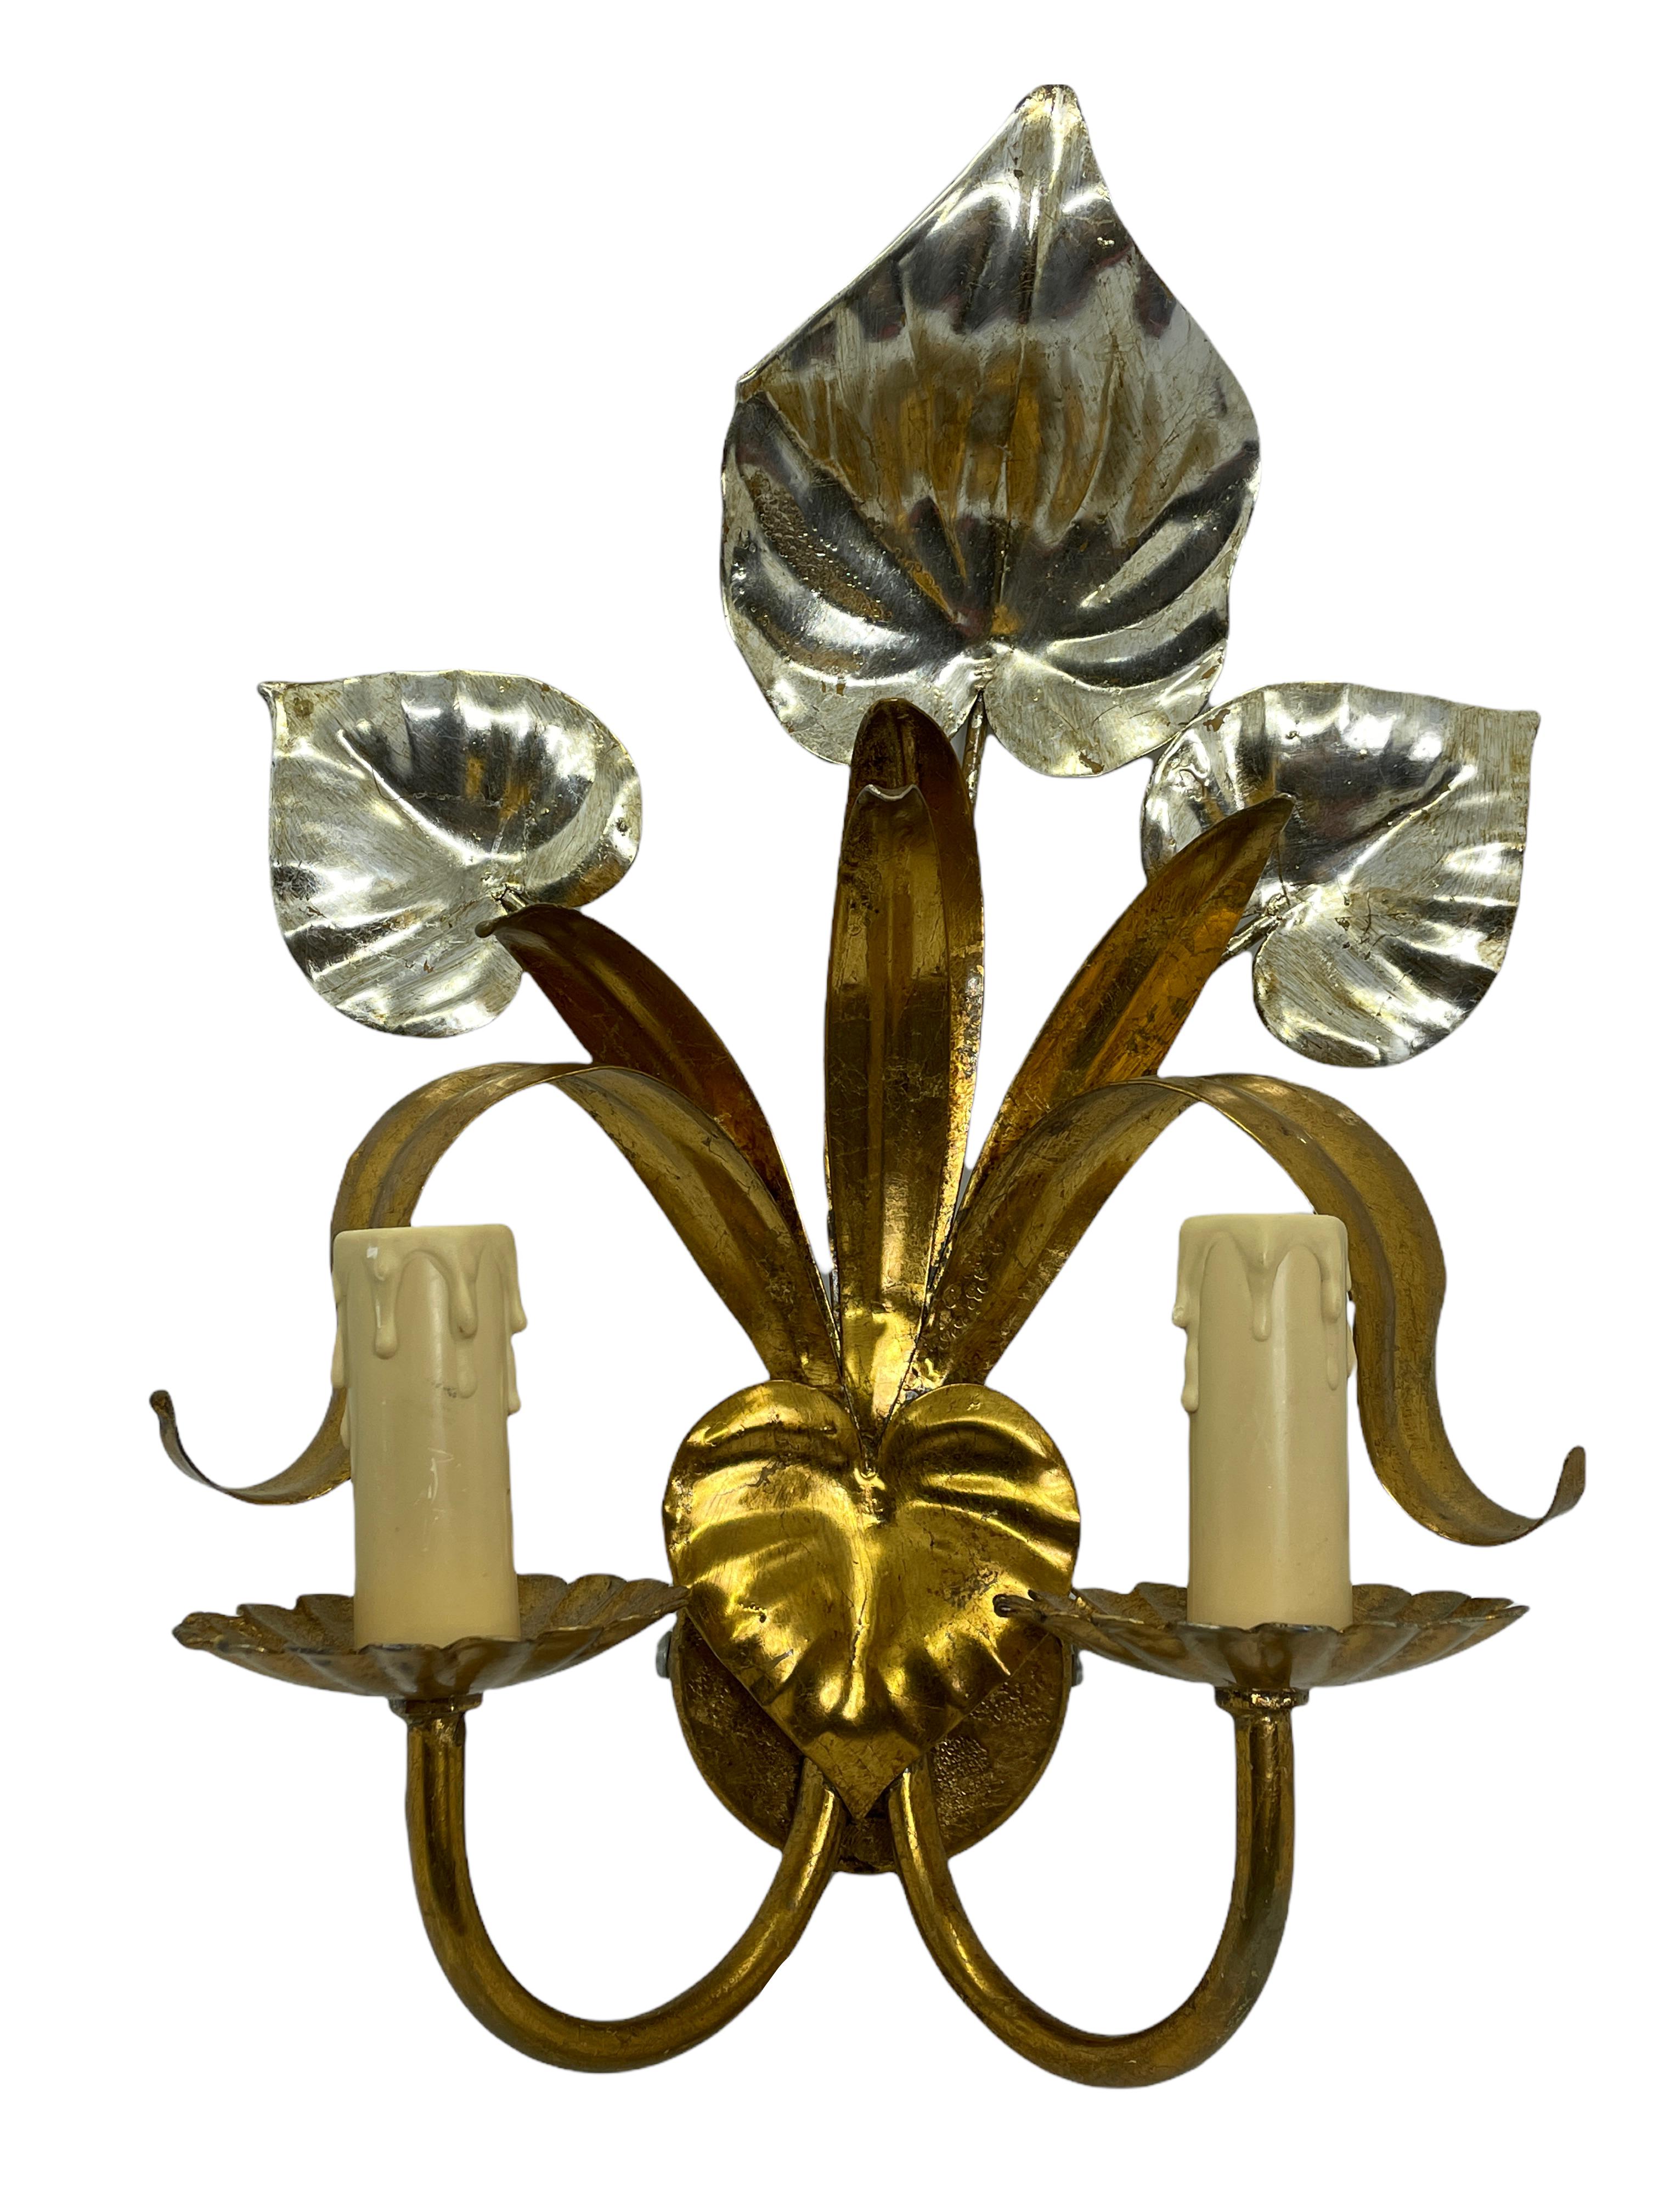 Ce lampadaire doré de style Hollywood Regency du milieu du siècle nécessite deux ampoules candélabres européennes E14, chaque ampoule ayant une puissance maximale de 40 watts. Cette applique murale a une belle patine et donne à chaque pièce une